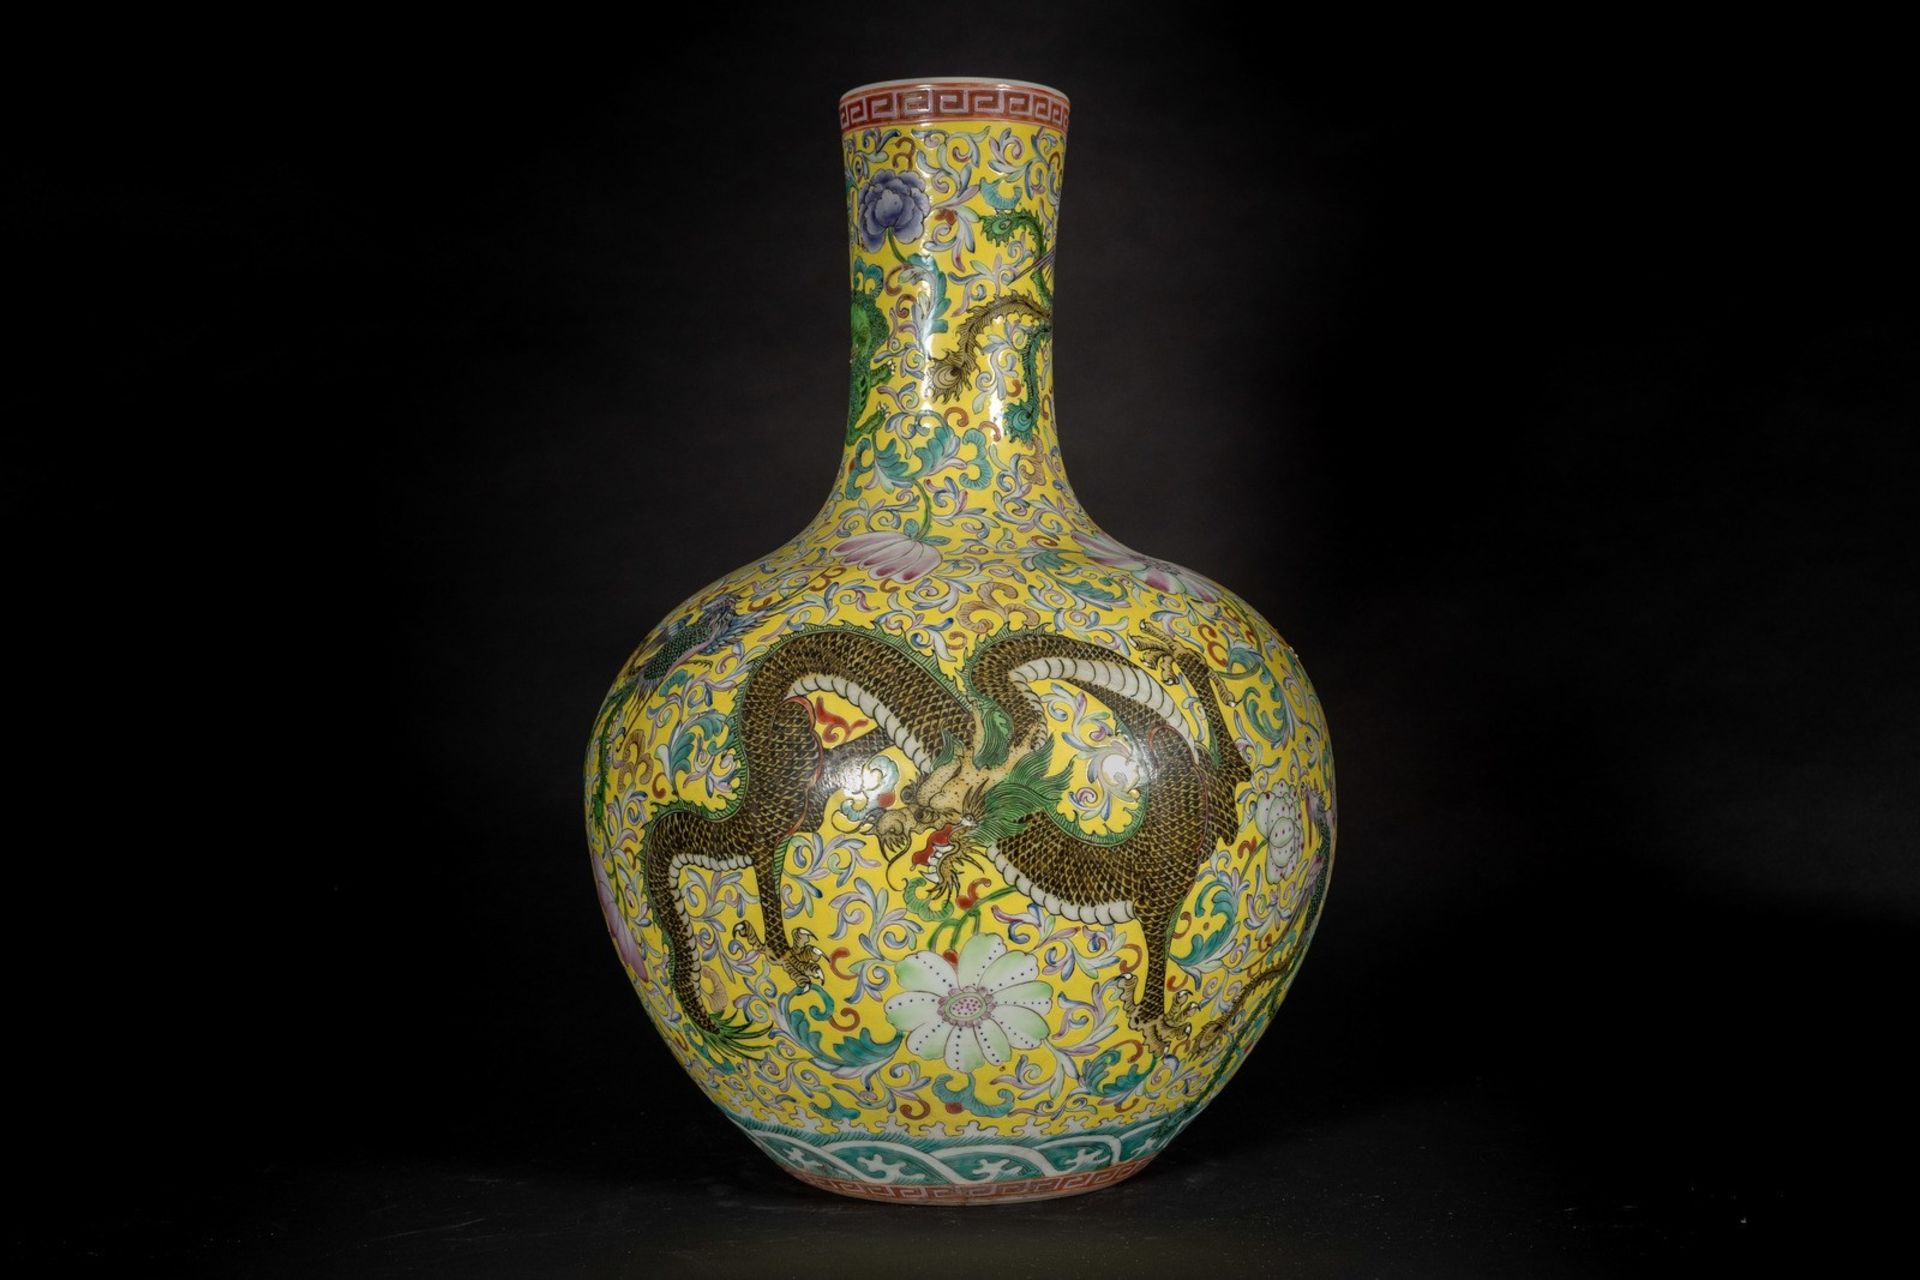 Arte Cinese A large globular porcelain tiaqiuping vase over yellow groundChina, 20th century.